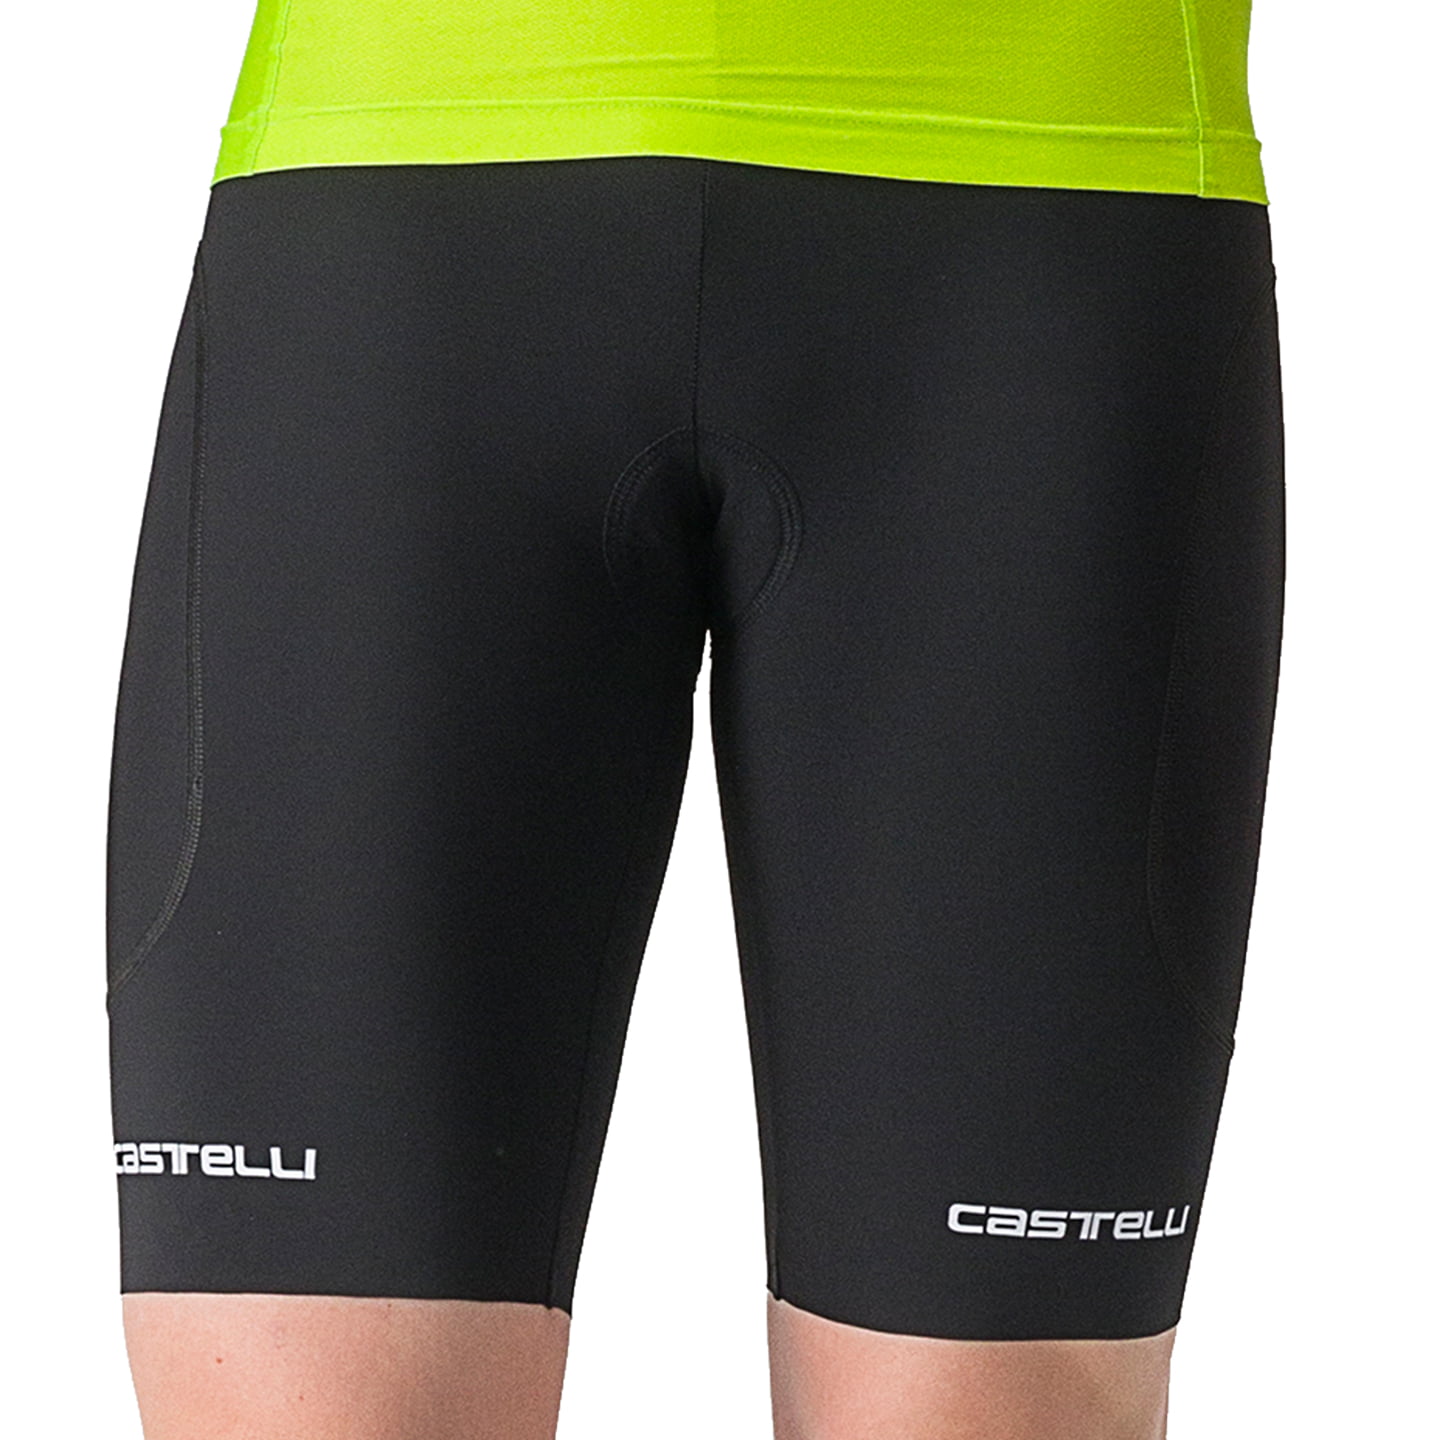 CASTELLI Ride-Run Tri Shorts, for men, size 2XL, Triathlon shorts, Triathlon apparel